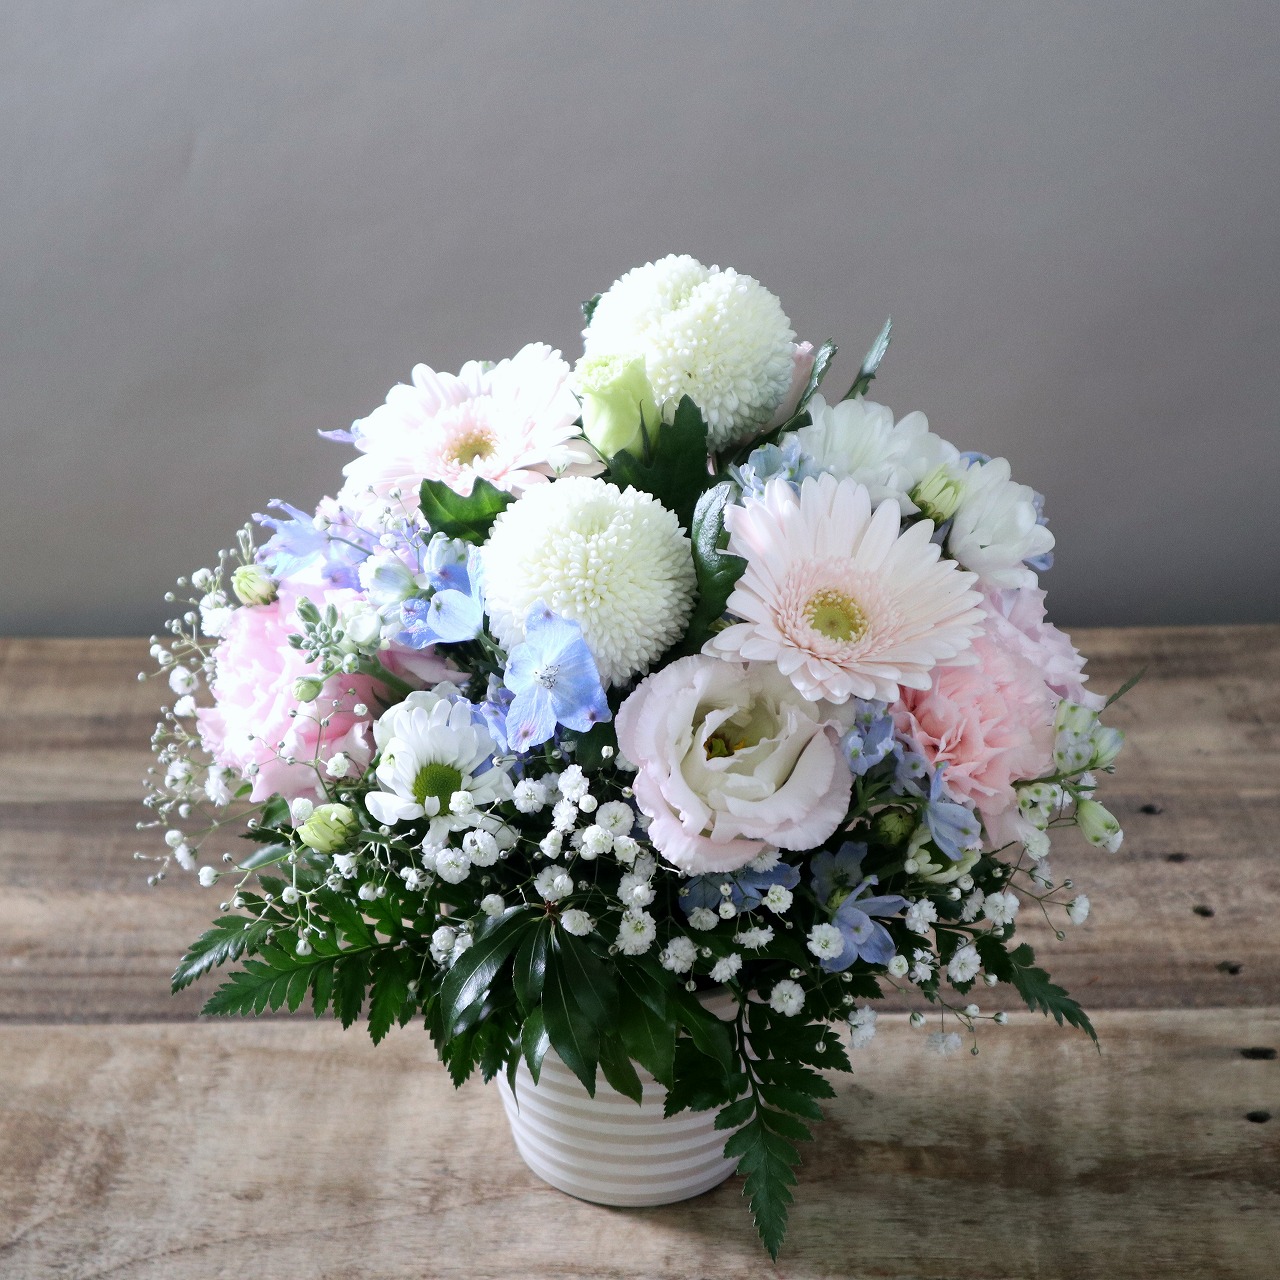 通販でお花を頼むのは初めてでしたが、写真を送っていただいたので、安心しました。